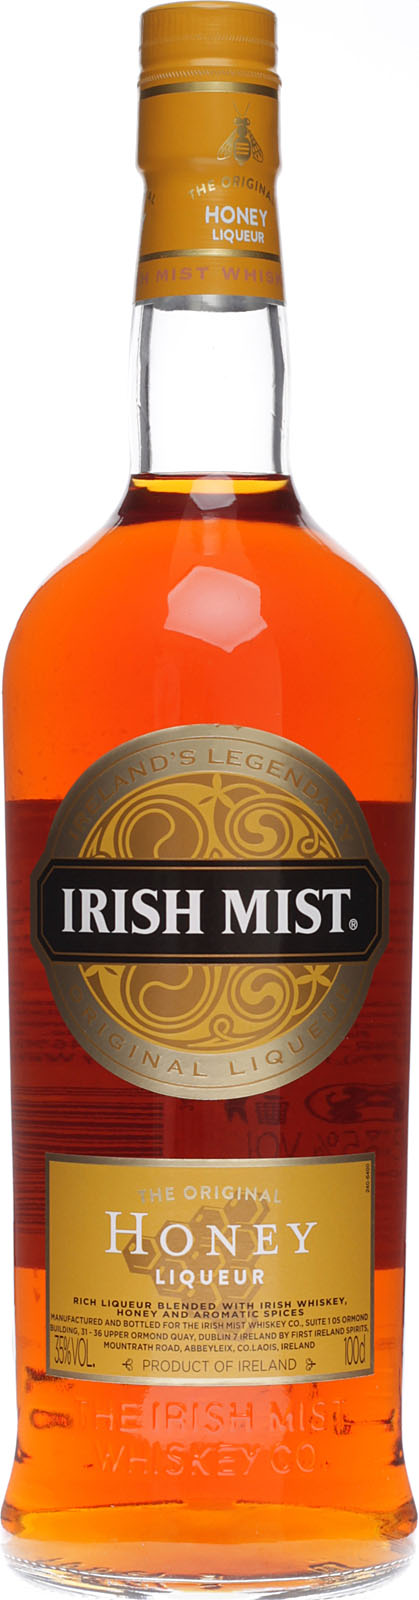 Irland aus Mist ein Irish Whisky ist Likör